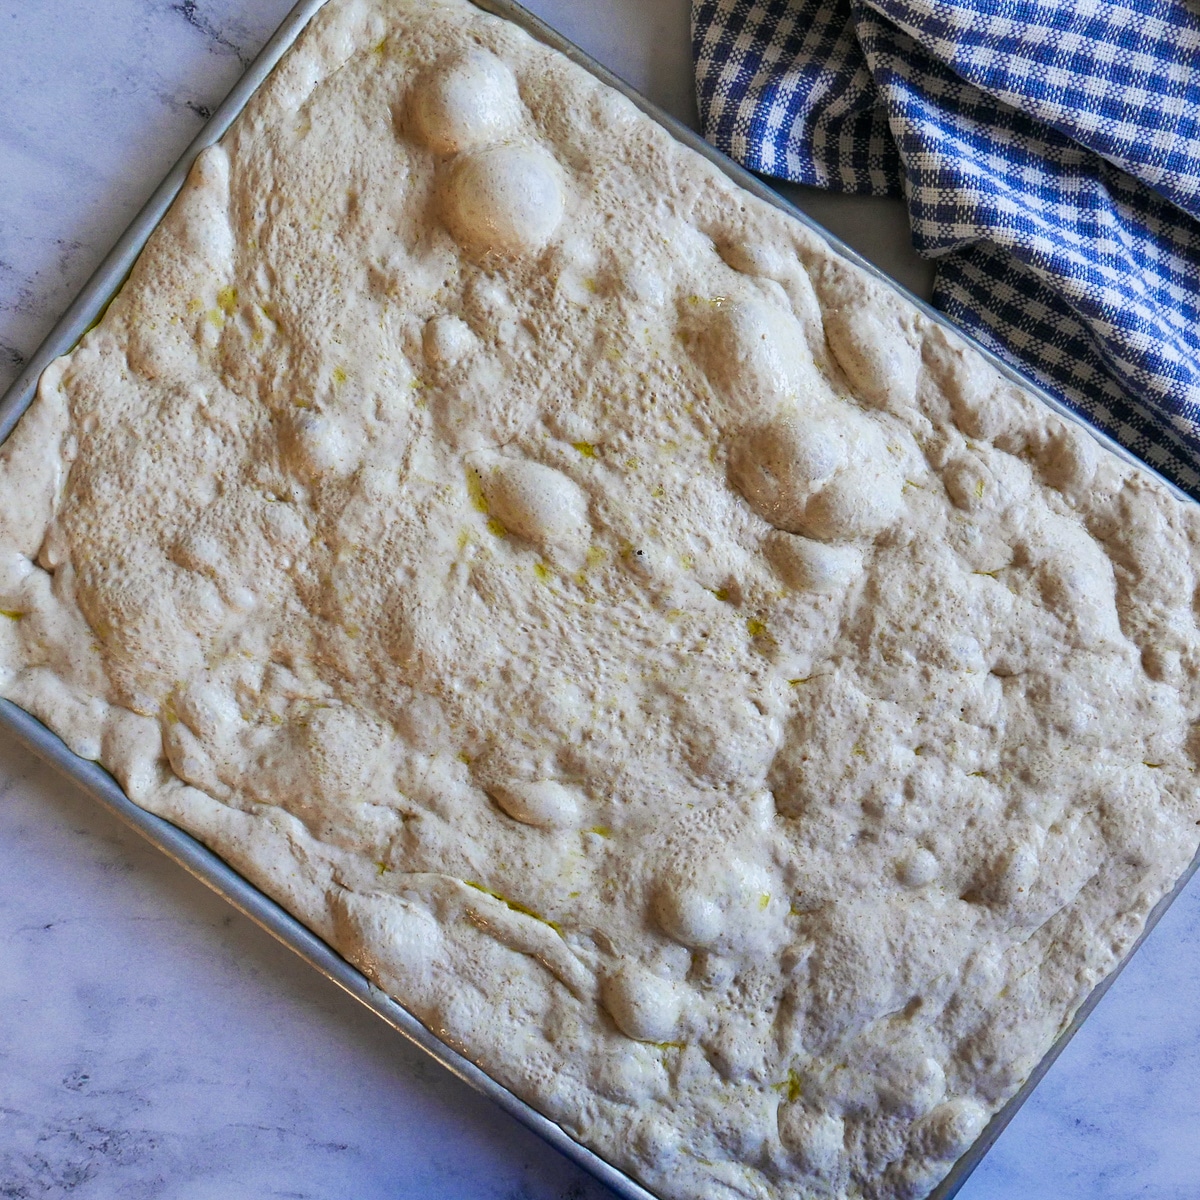 bubbly focaccia dough in a baking sheet